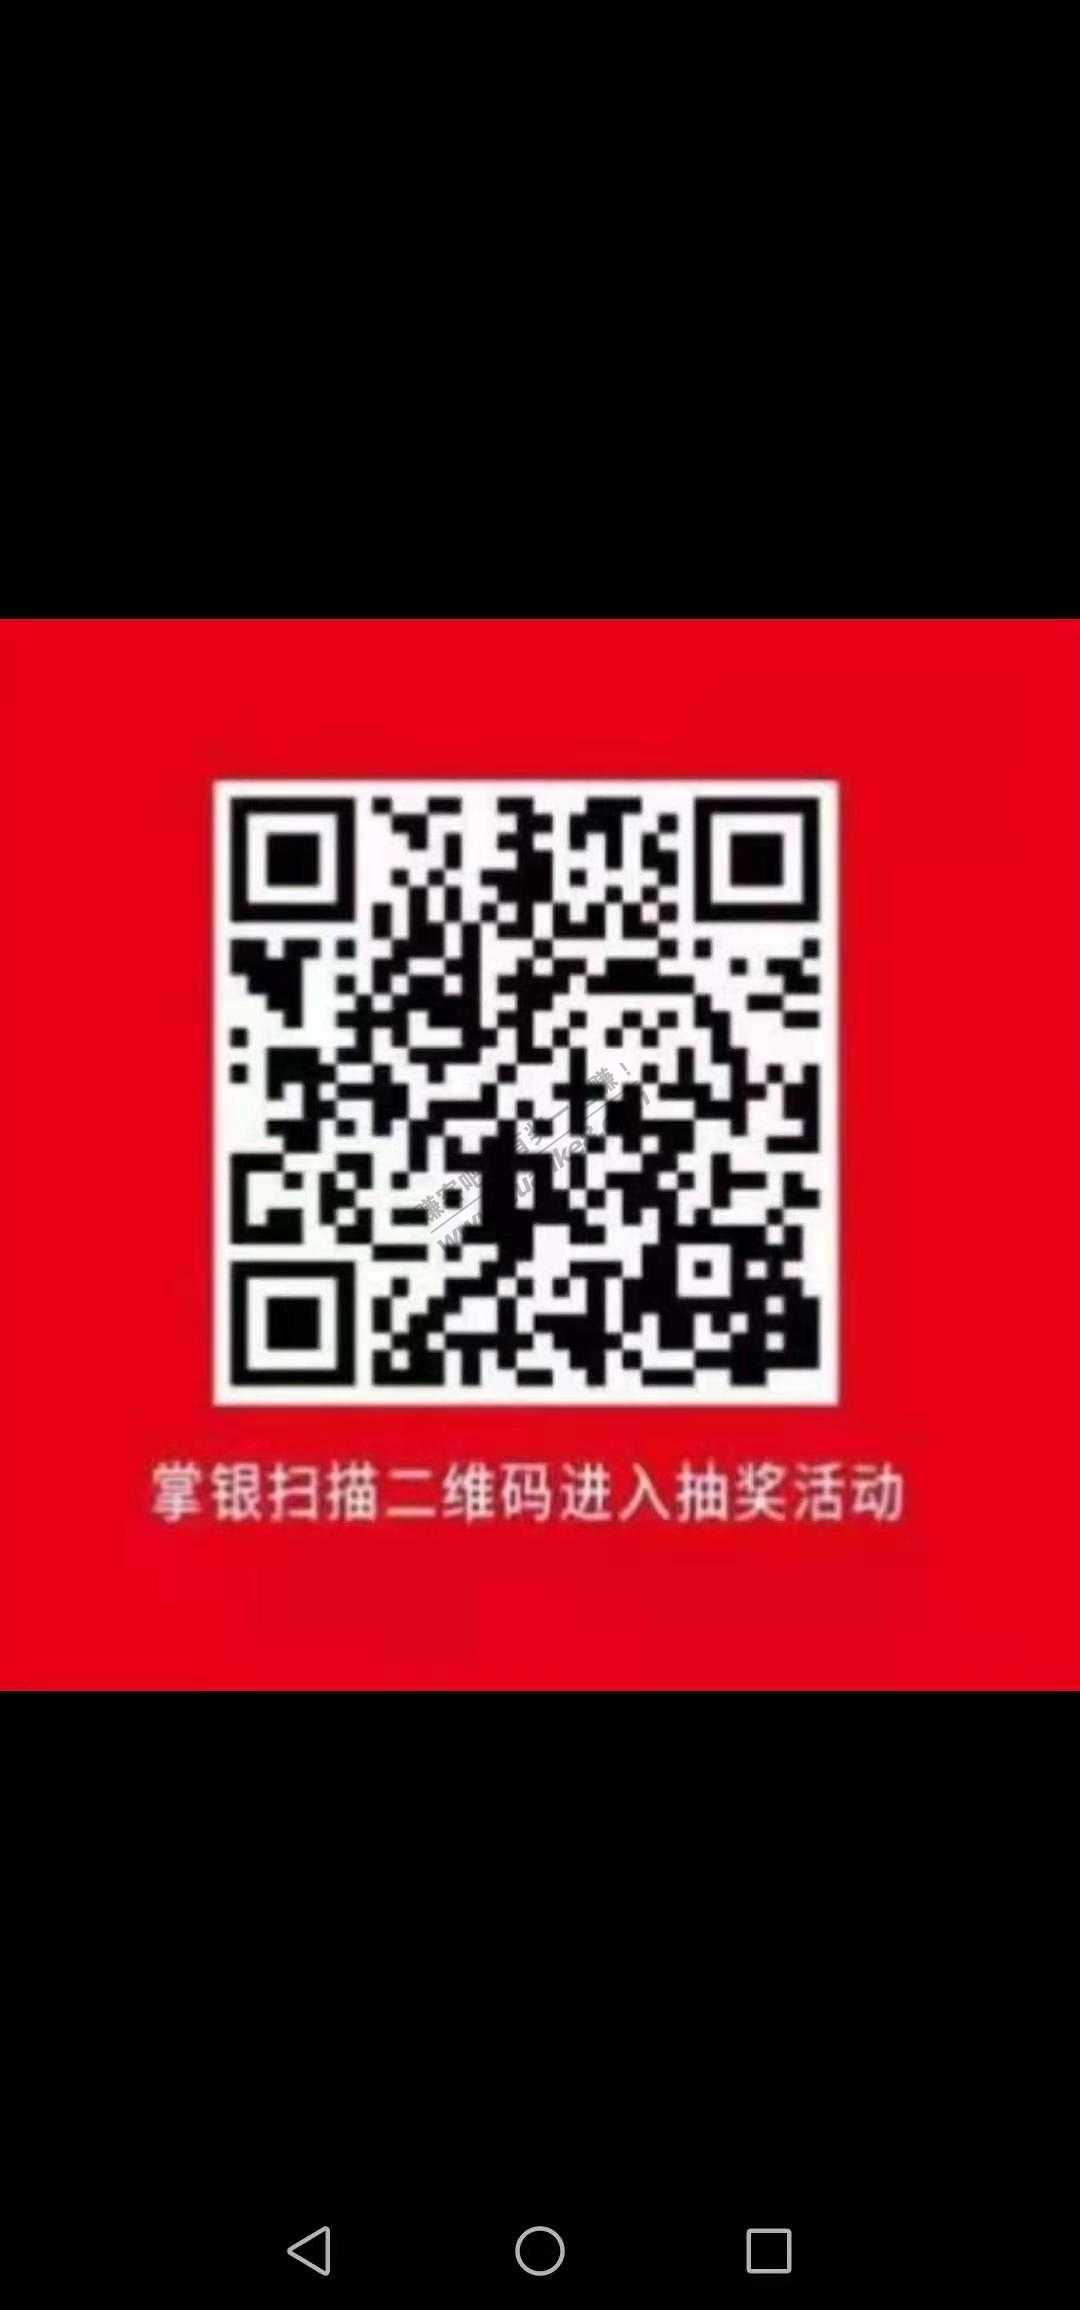 农行app最低话费3元限制  0319手机号-惠小助(52huixz.com)